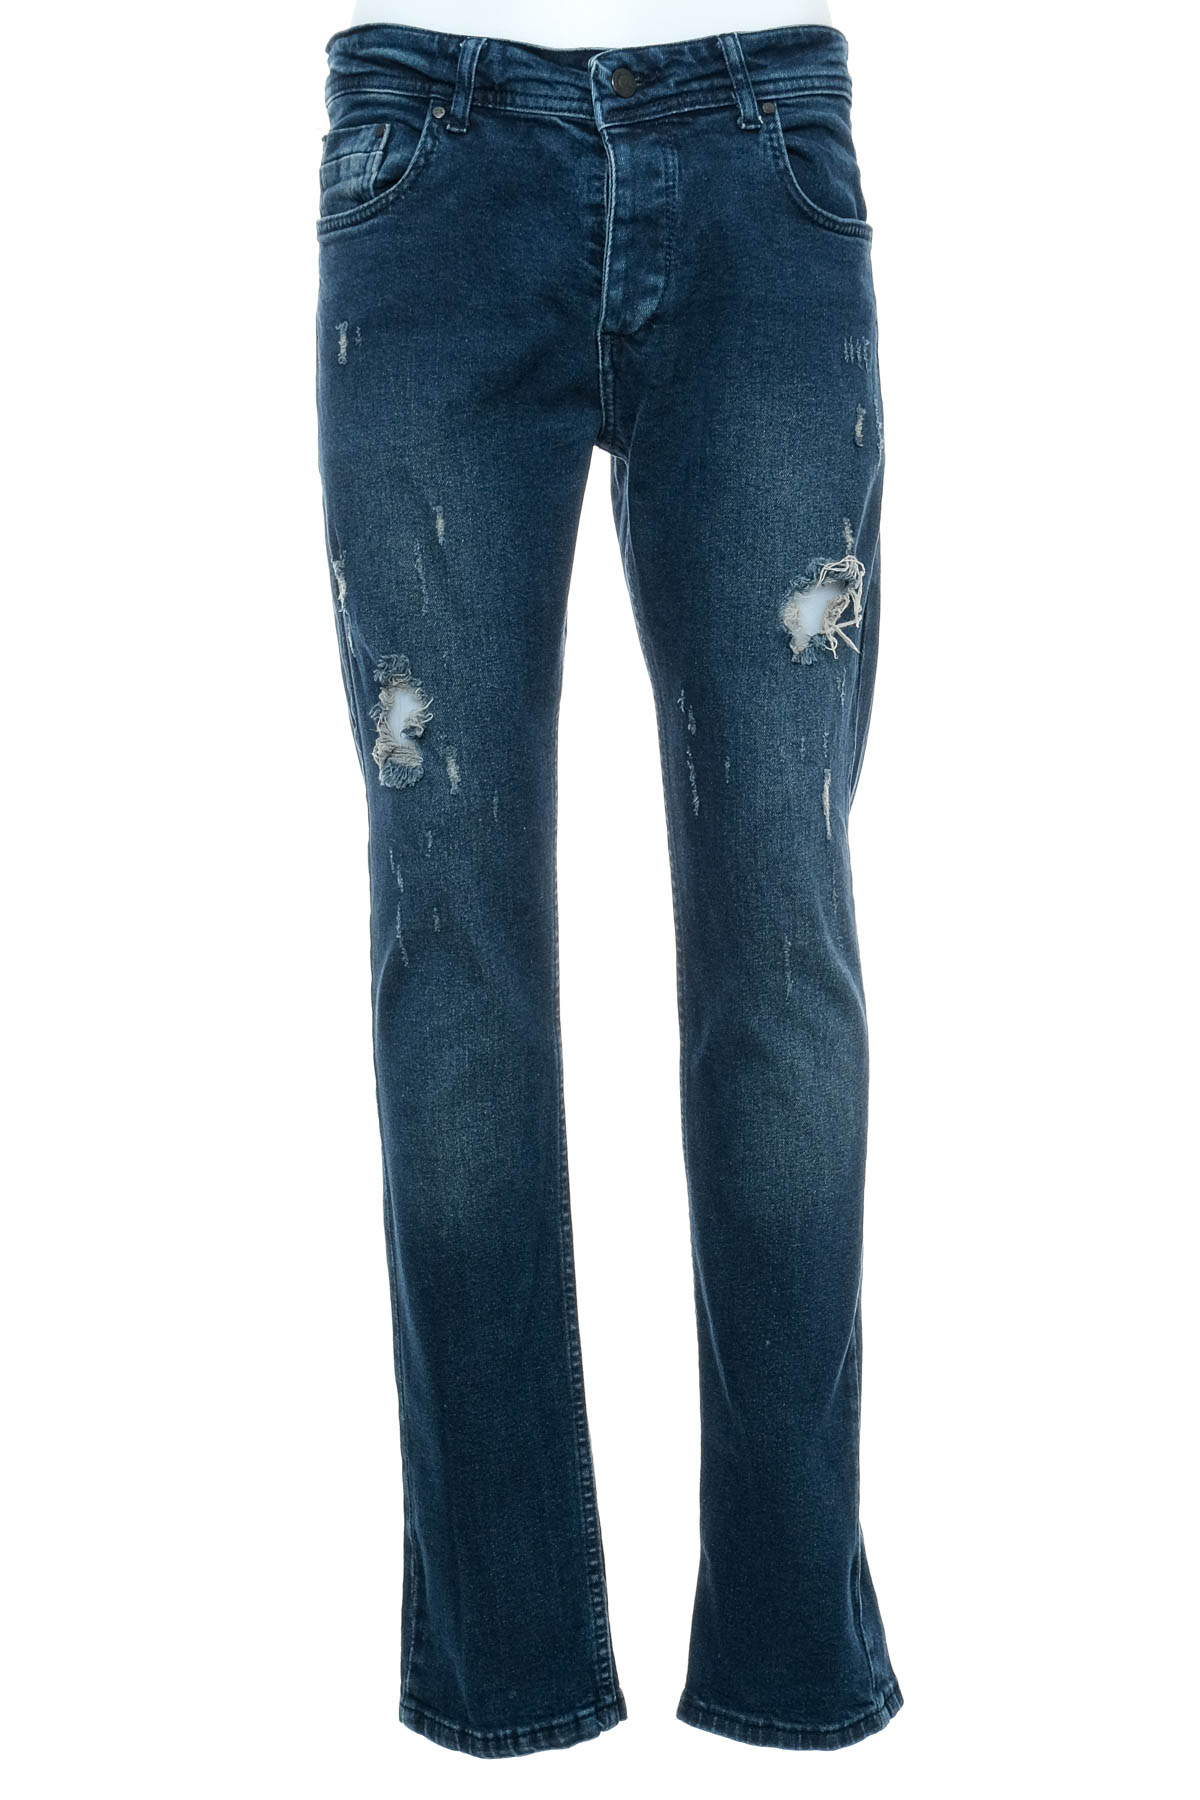 Men's jeans - Jack Kevin - 0